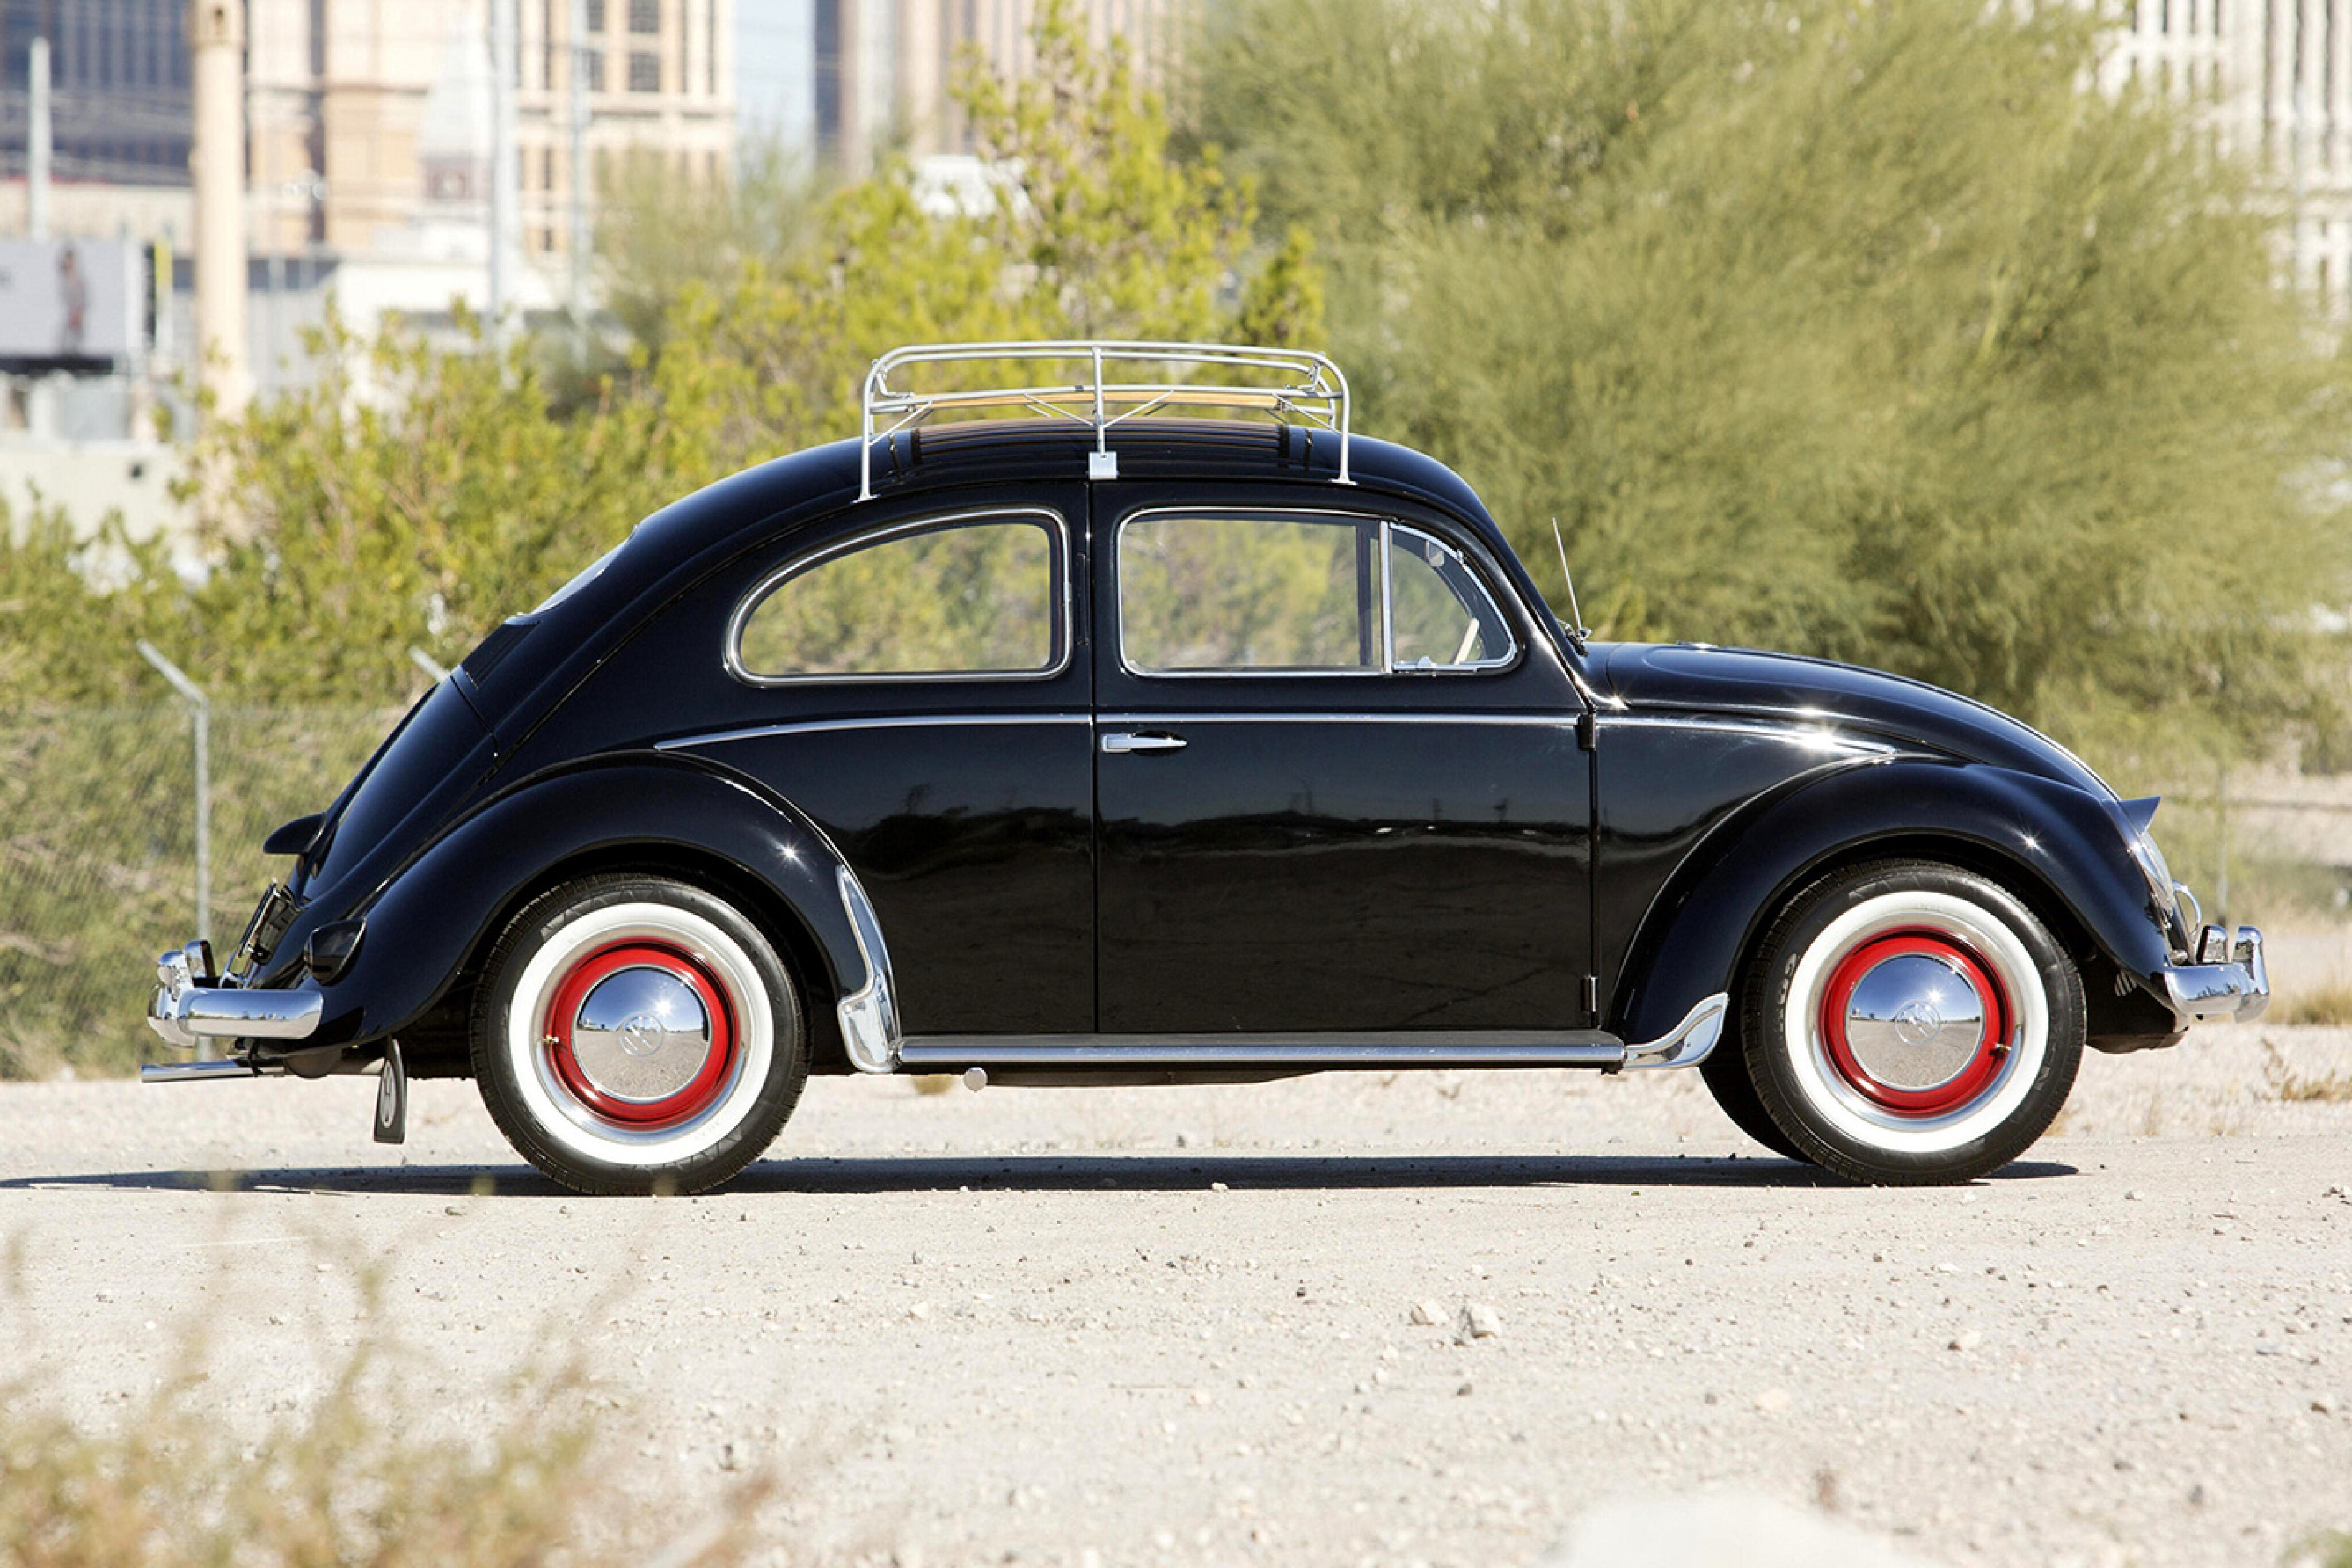 b79009c6484/1954 volkswagen beetle jpg